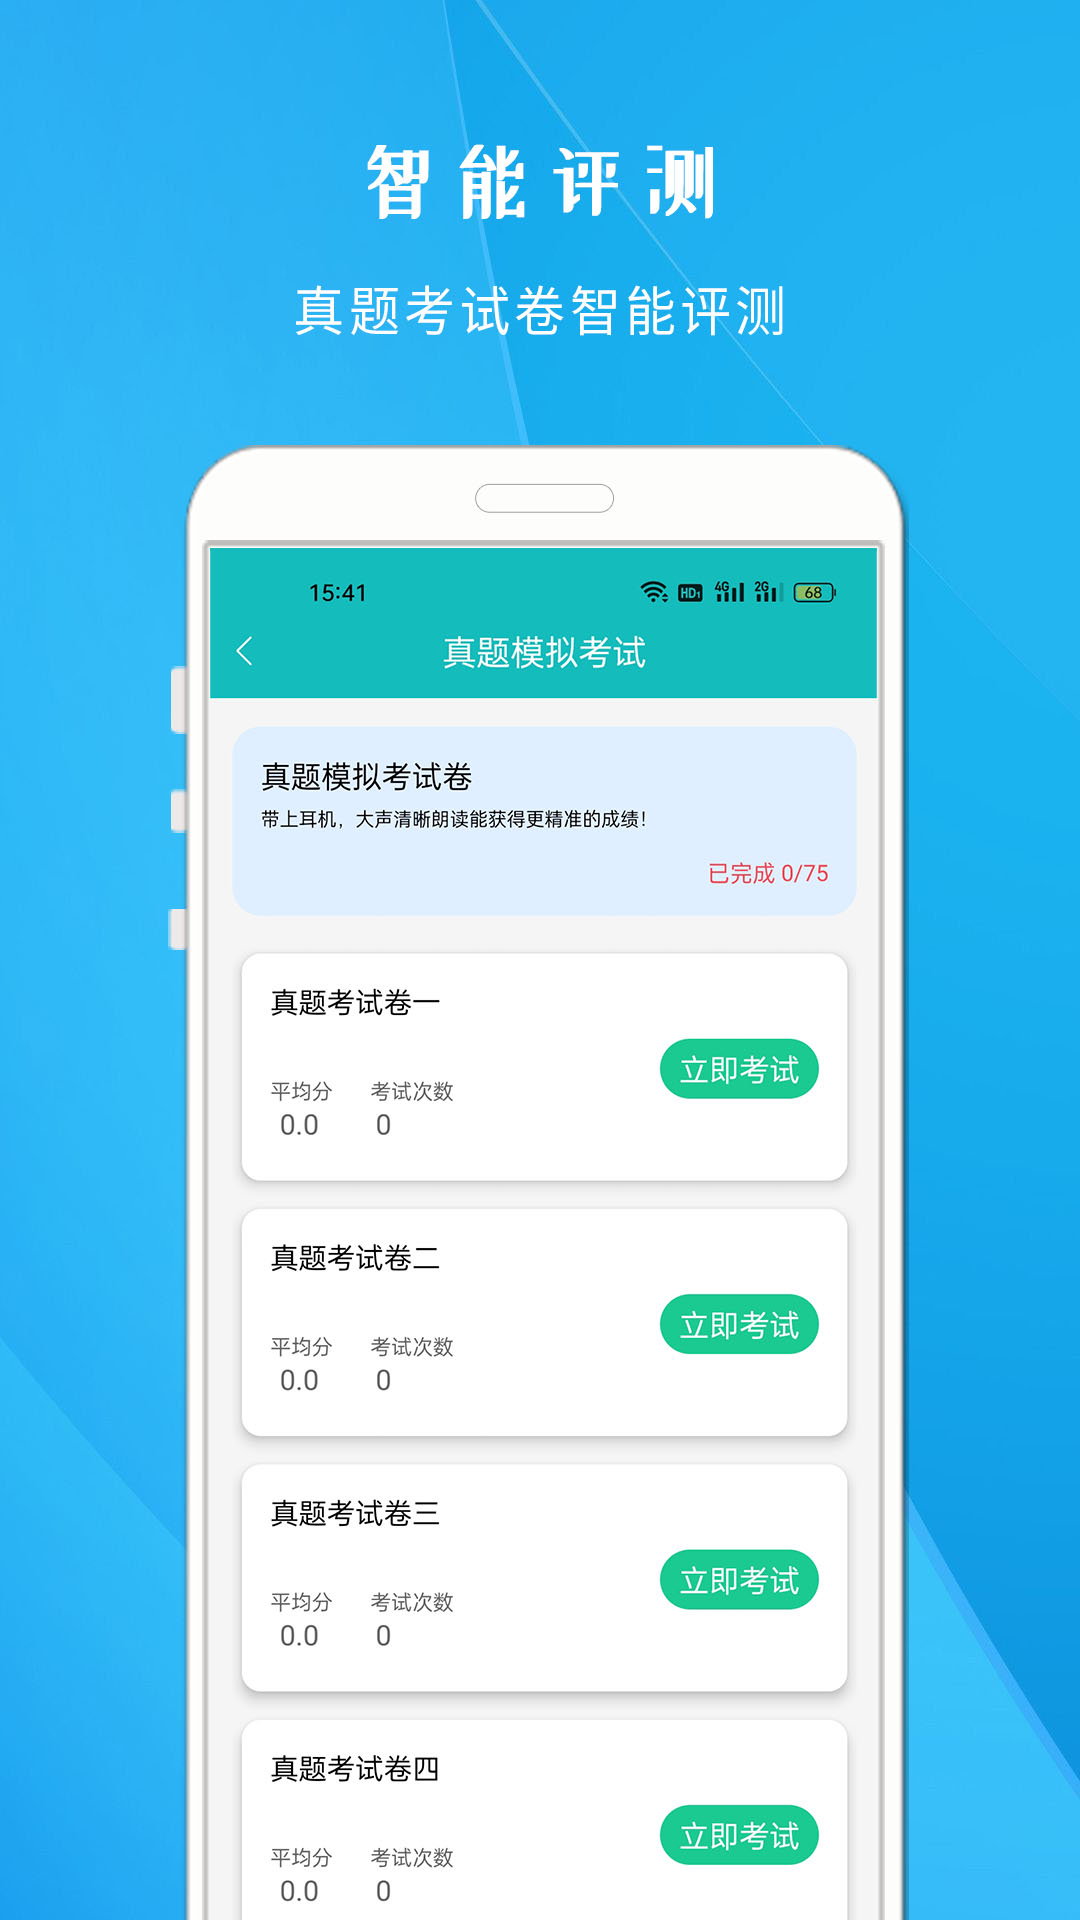 学说普通话app下载,学说普通话app官方版 v1.703